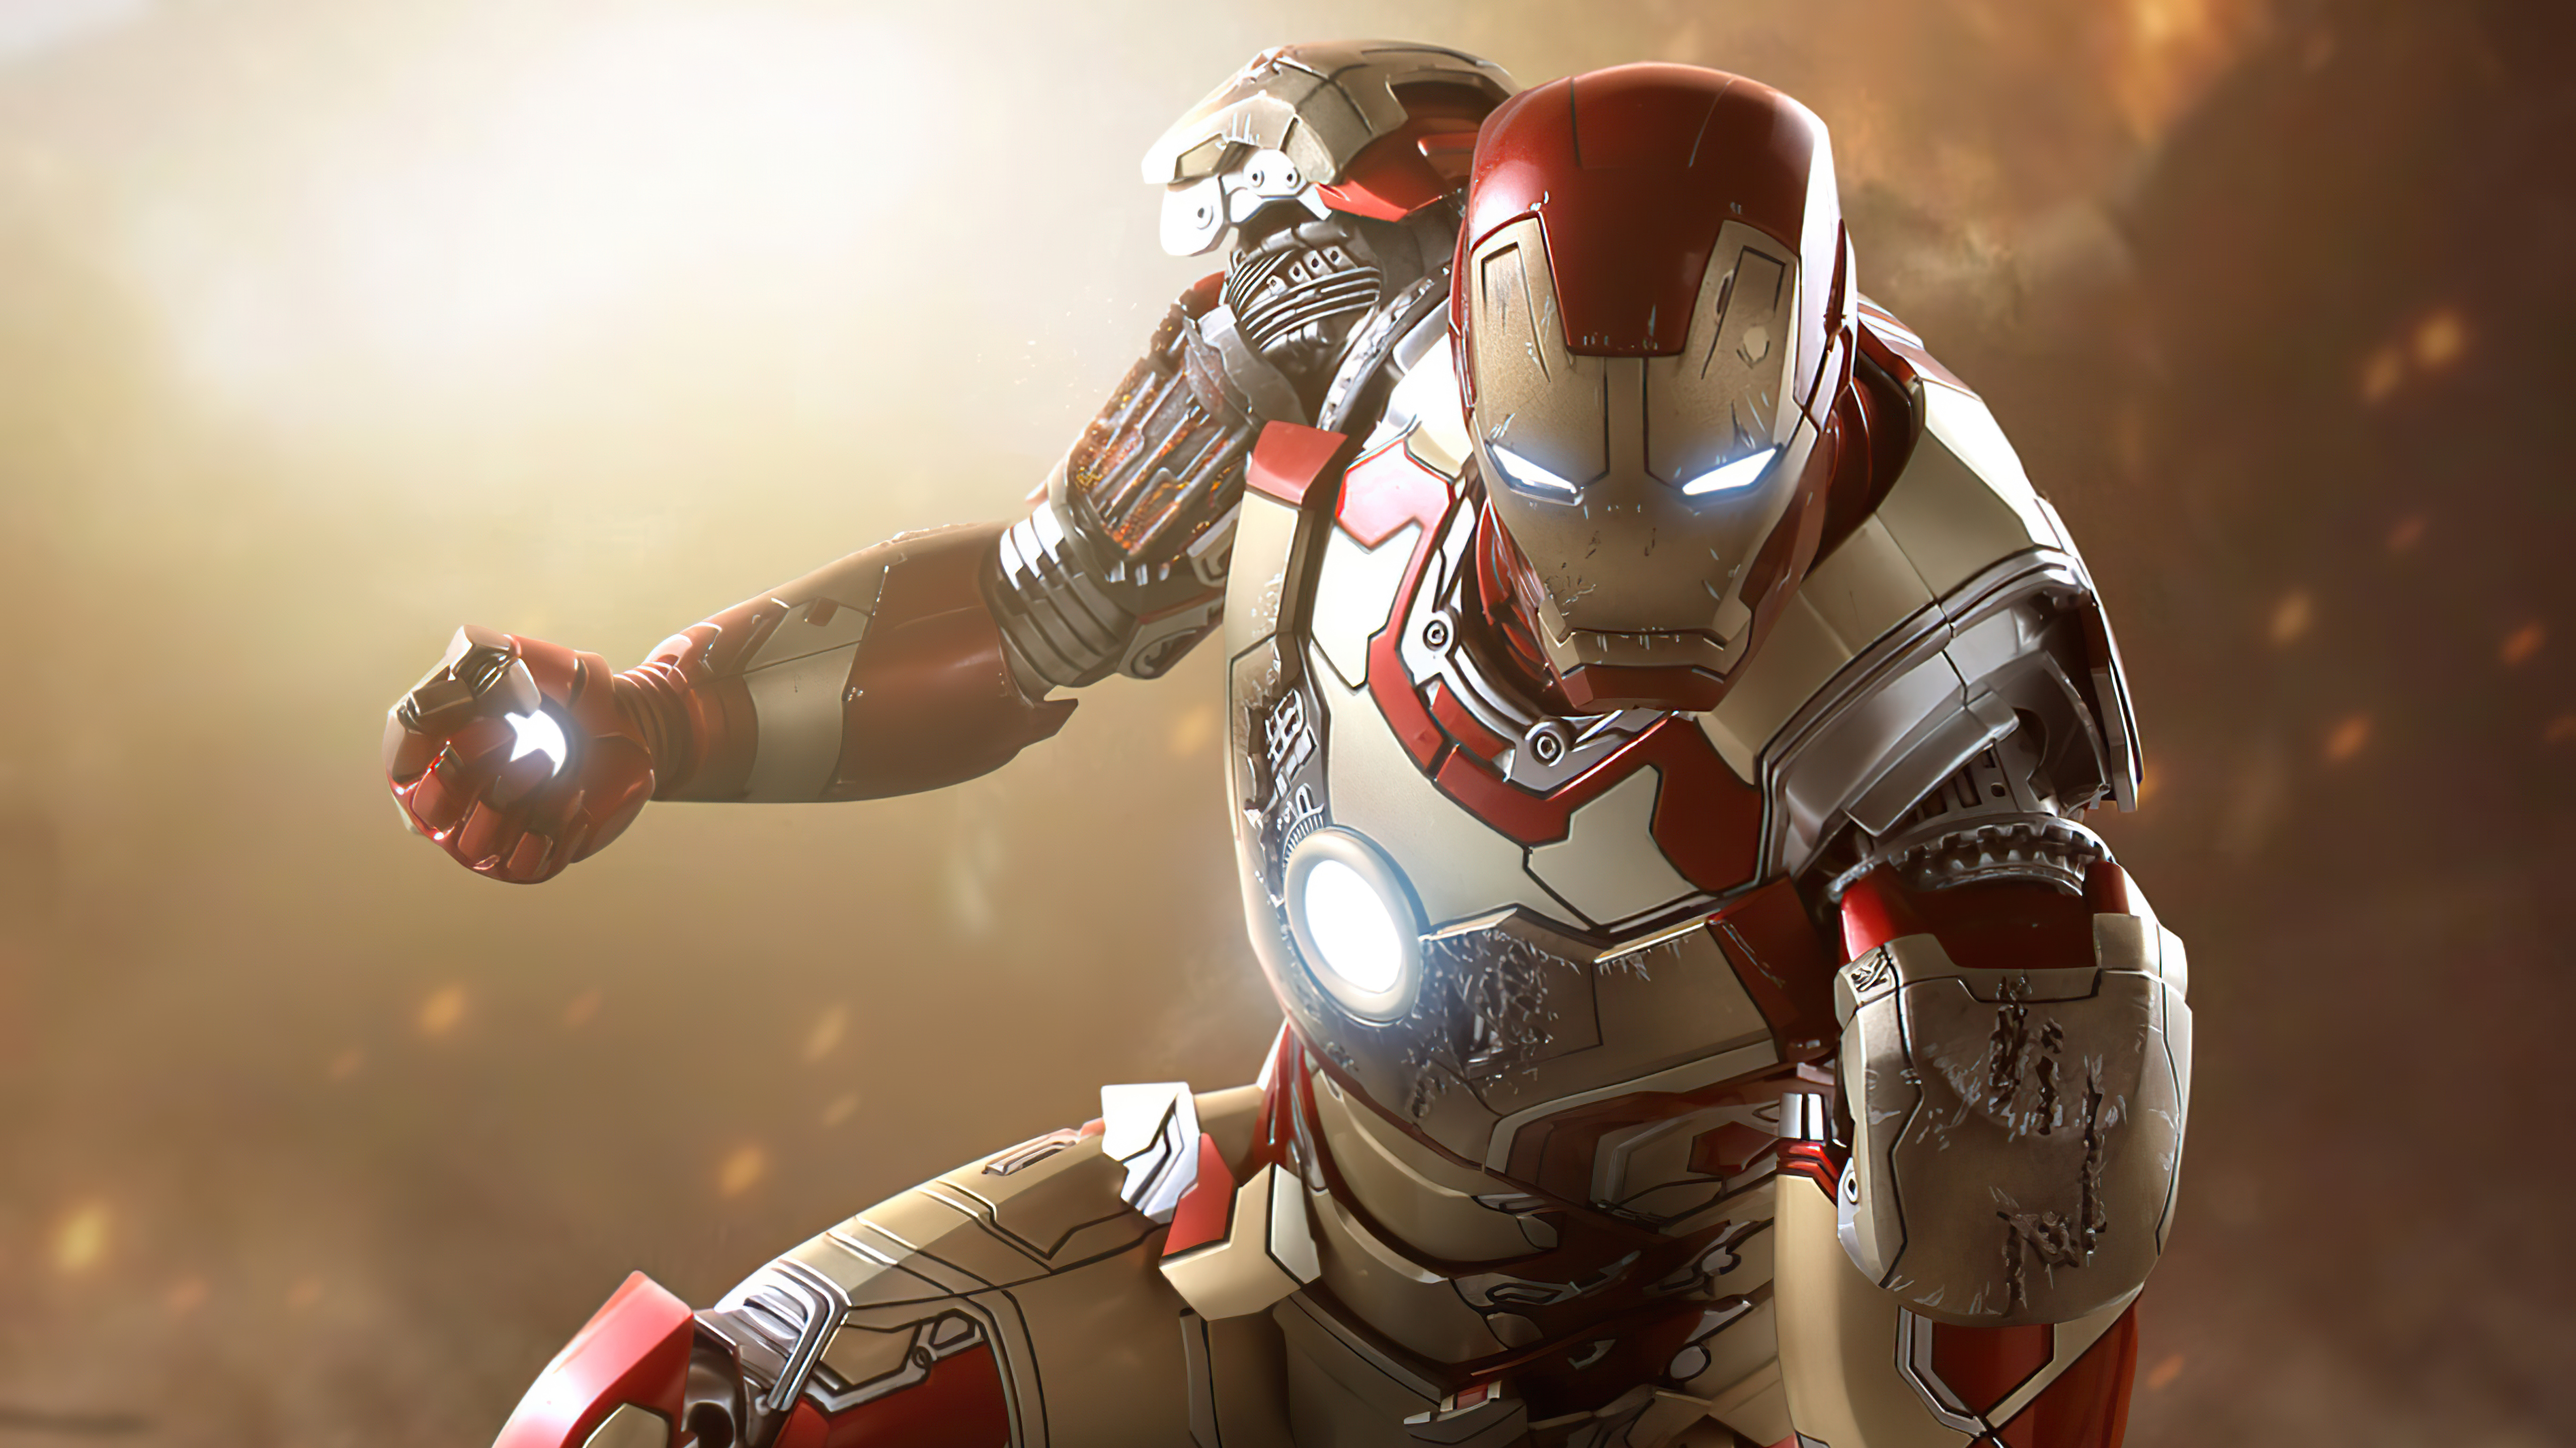 Hình nền Iron Man đầy uy lực, lịch lãm và nổi tiếng với chiếc giáp đỉnh cao! Hãy tải ngay hình ảnh liên quan để trang trí cho desktop hay điện thoại di động của bạn. Bằng cách này, bạn sẽ không chỉ trang trí cho đúng gu của mình, mà còn cảm nhận được sức mạnh và oai phong của Siêu Nhân Iron Man!